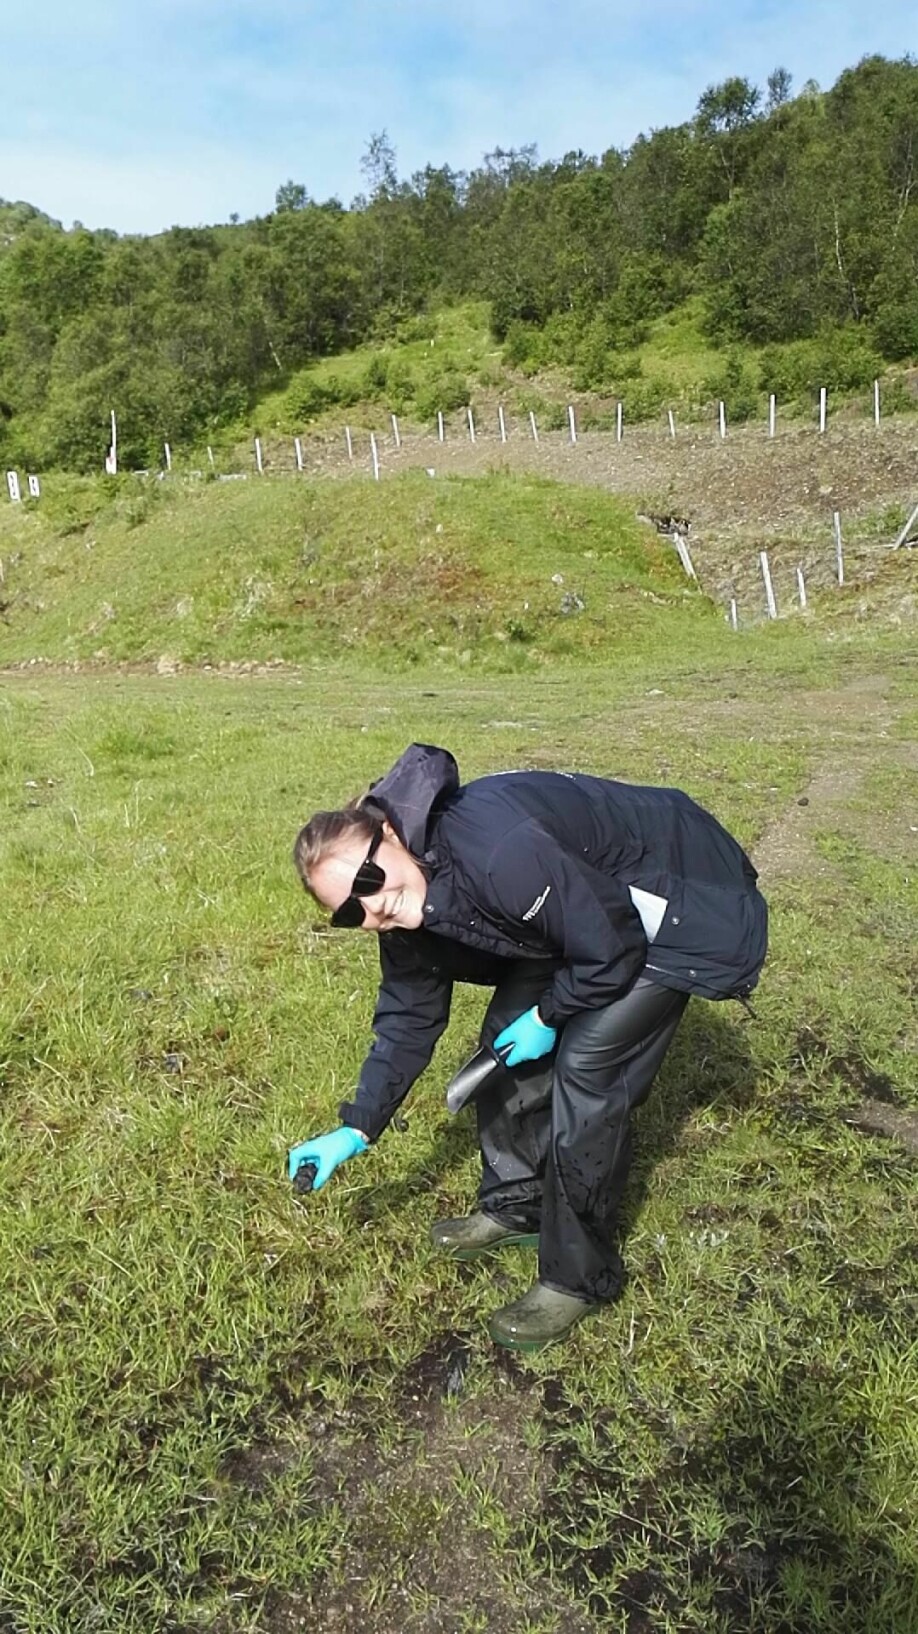 It’s a dirty job, but somebody’s gotta do it. FFI-forsker Ida Vaa Johnsen sanker sauemøkk på Melbu skytefelt sommeren 2017.